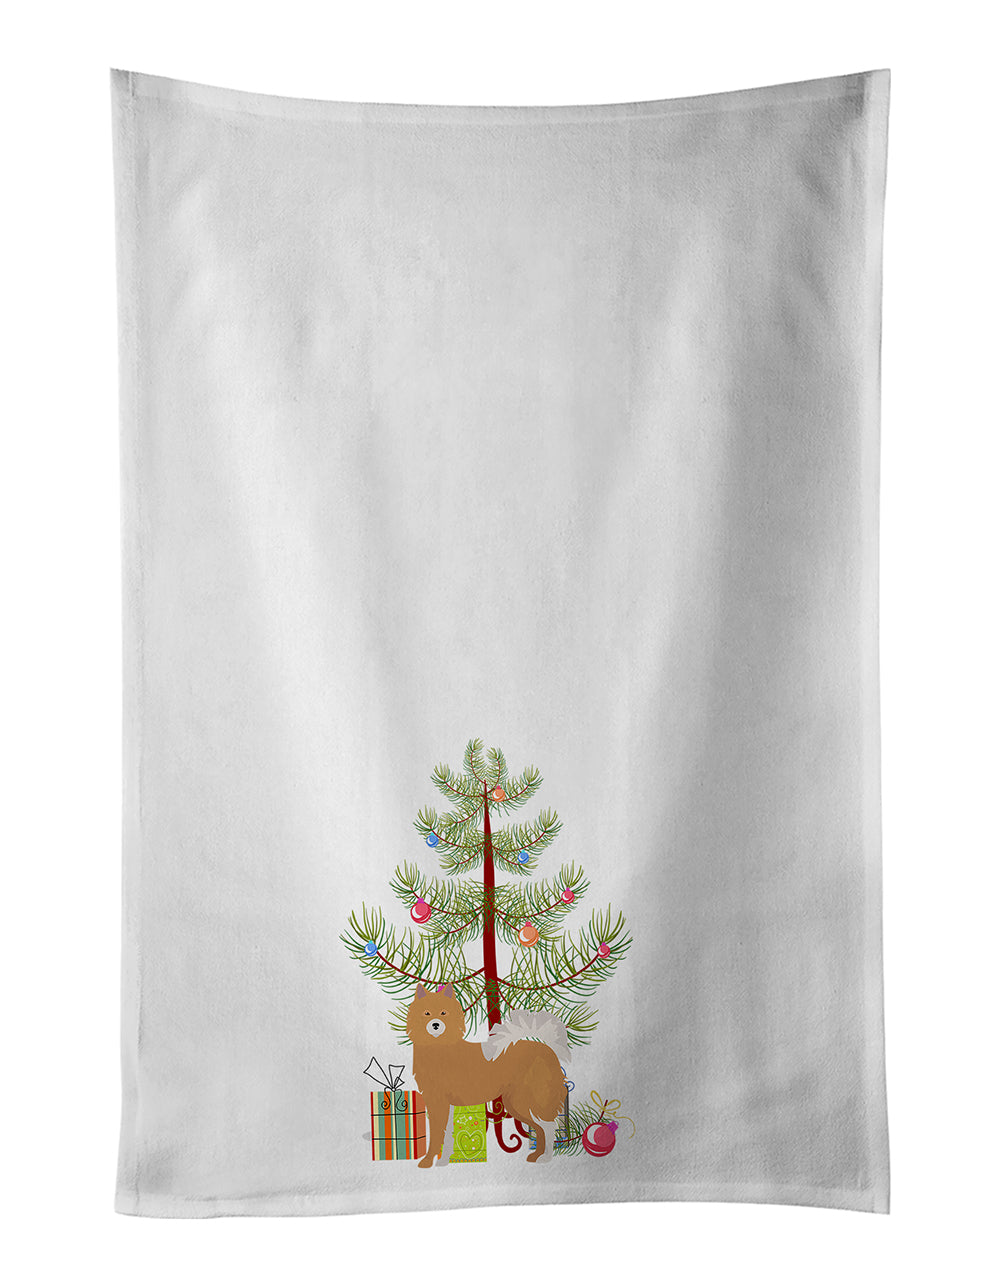 Buy this Brown & White Elo dog Christmas Tree White Kitchen Towel Set of 2